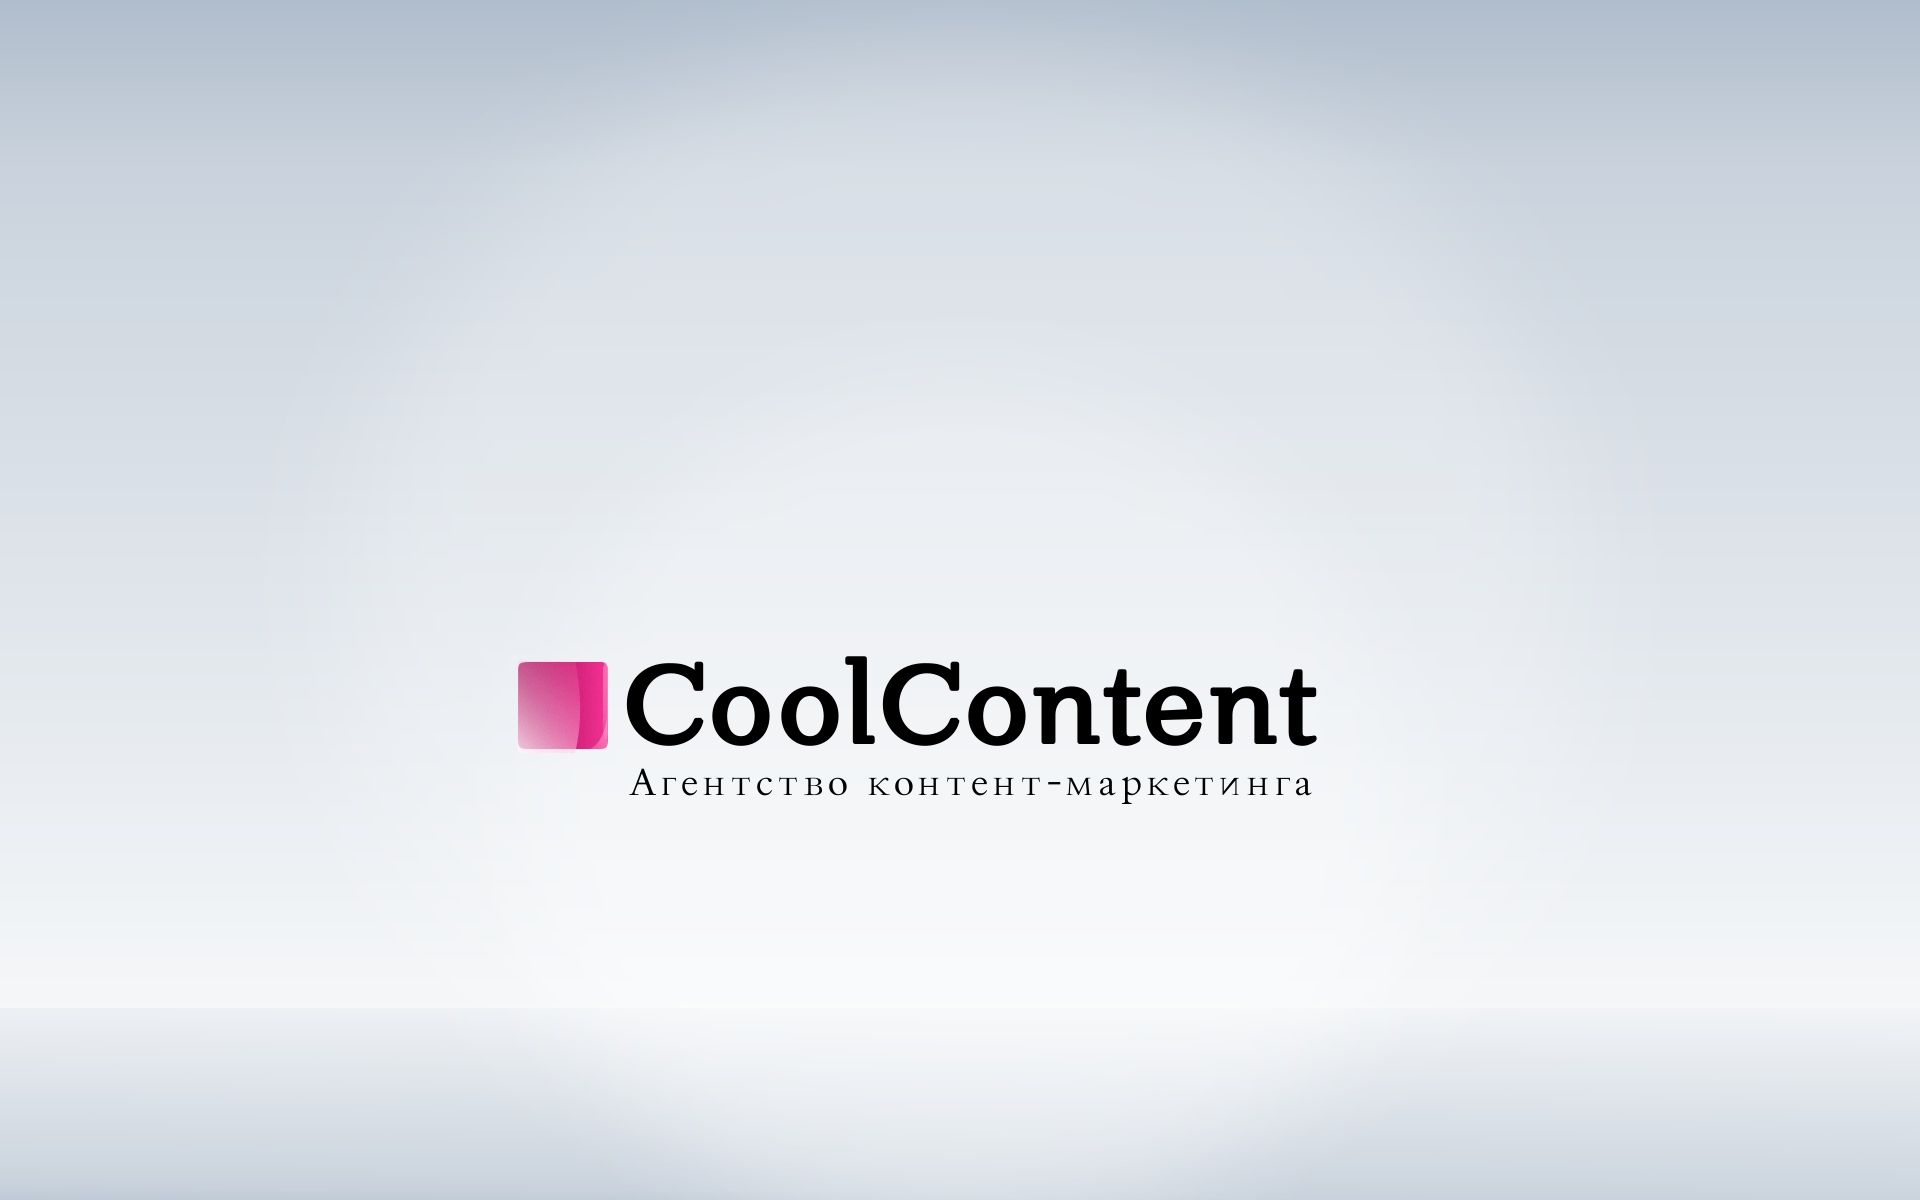 Лого для агентства Cool Content - дизайнер 051290